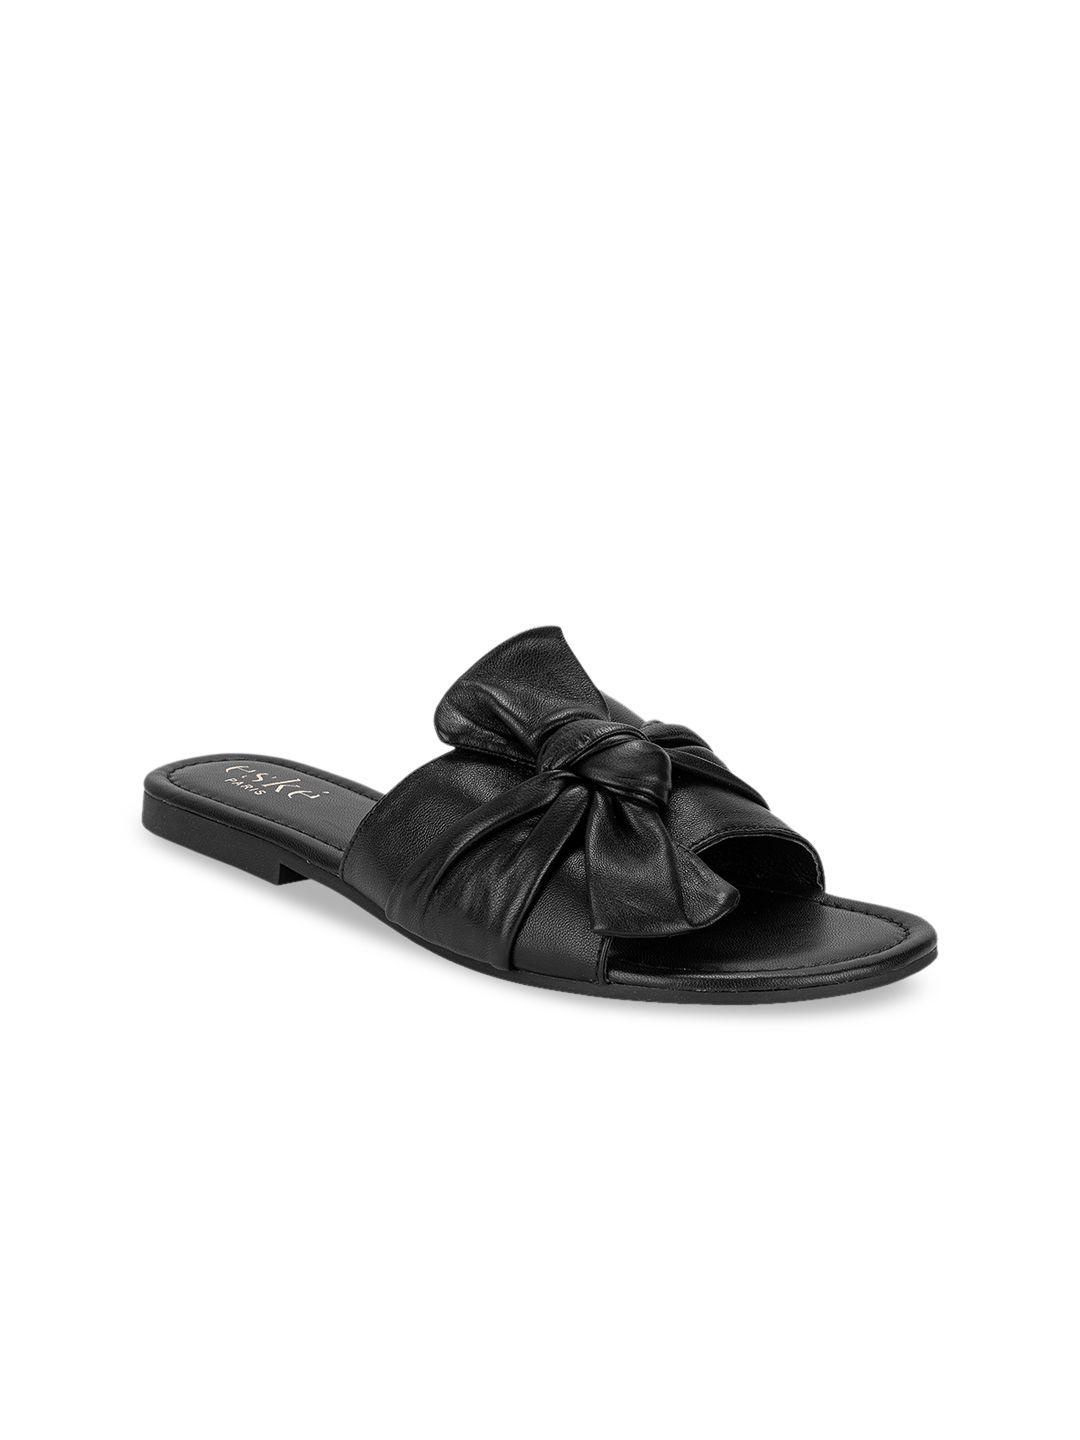 eske women black solid leather open toe flats